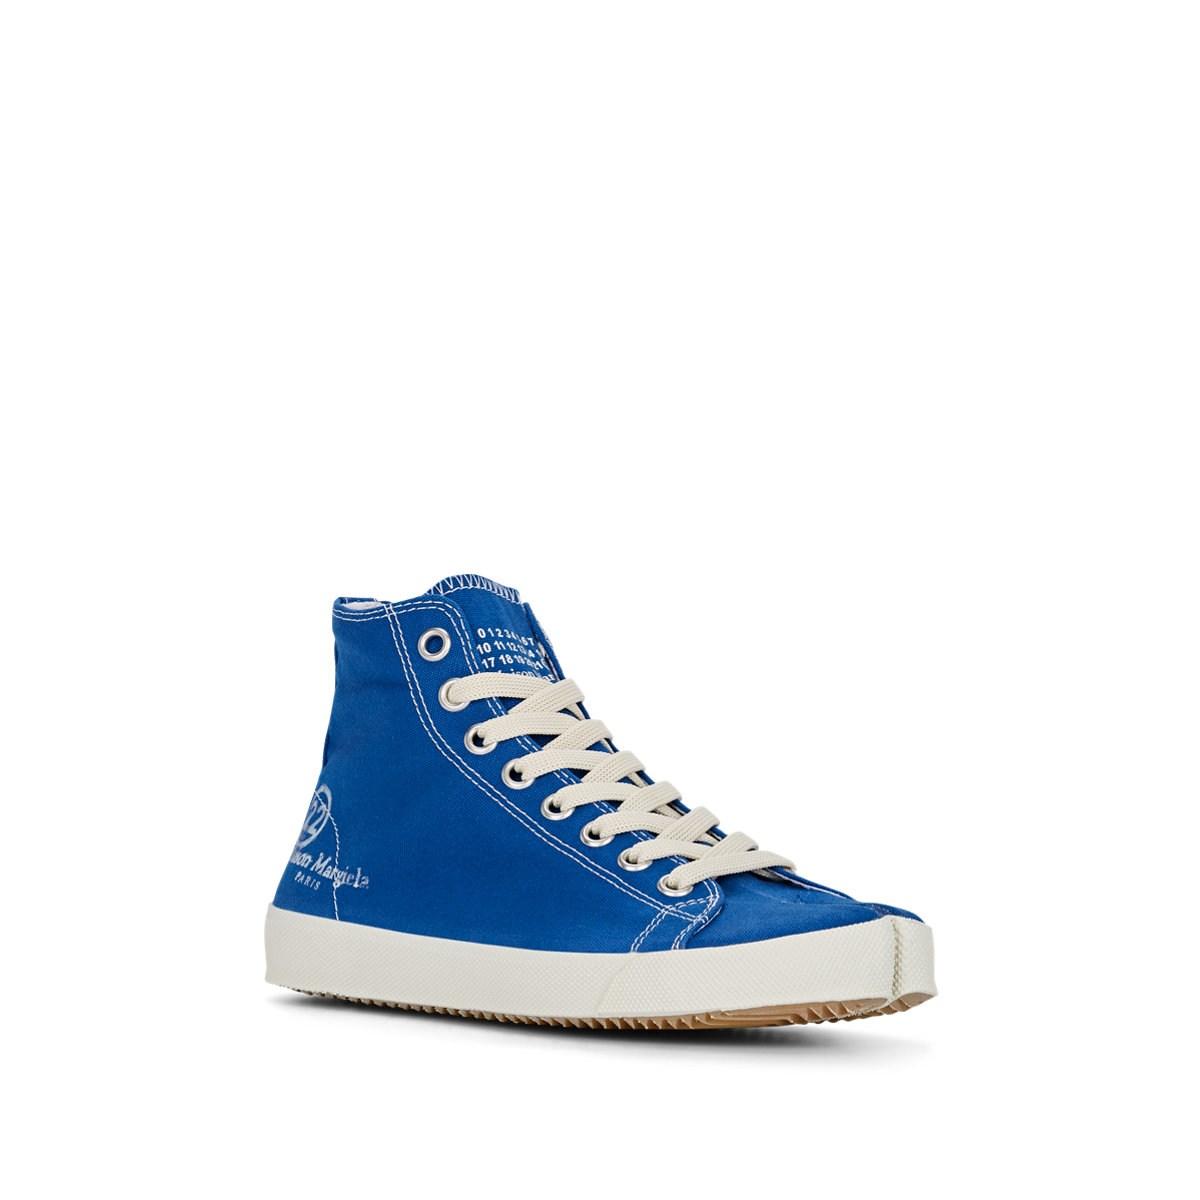 Maison Margiela Tabi Canvas Sneakers in Blue - Lyst